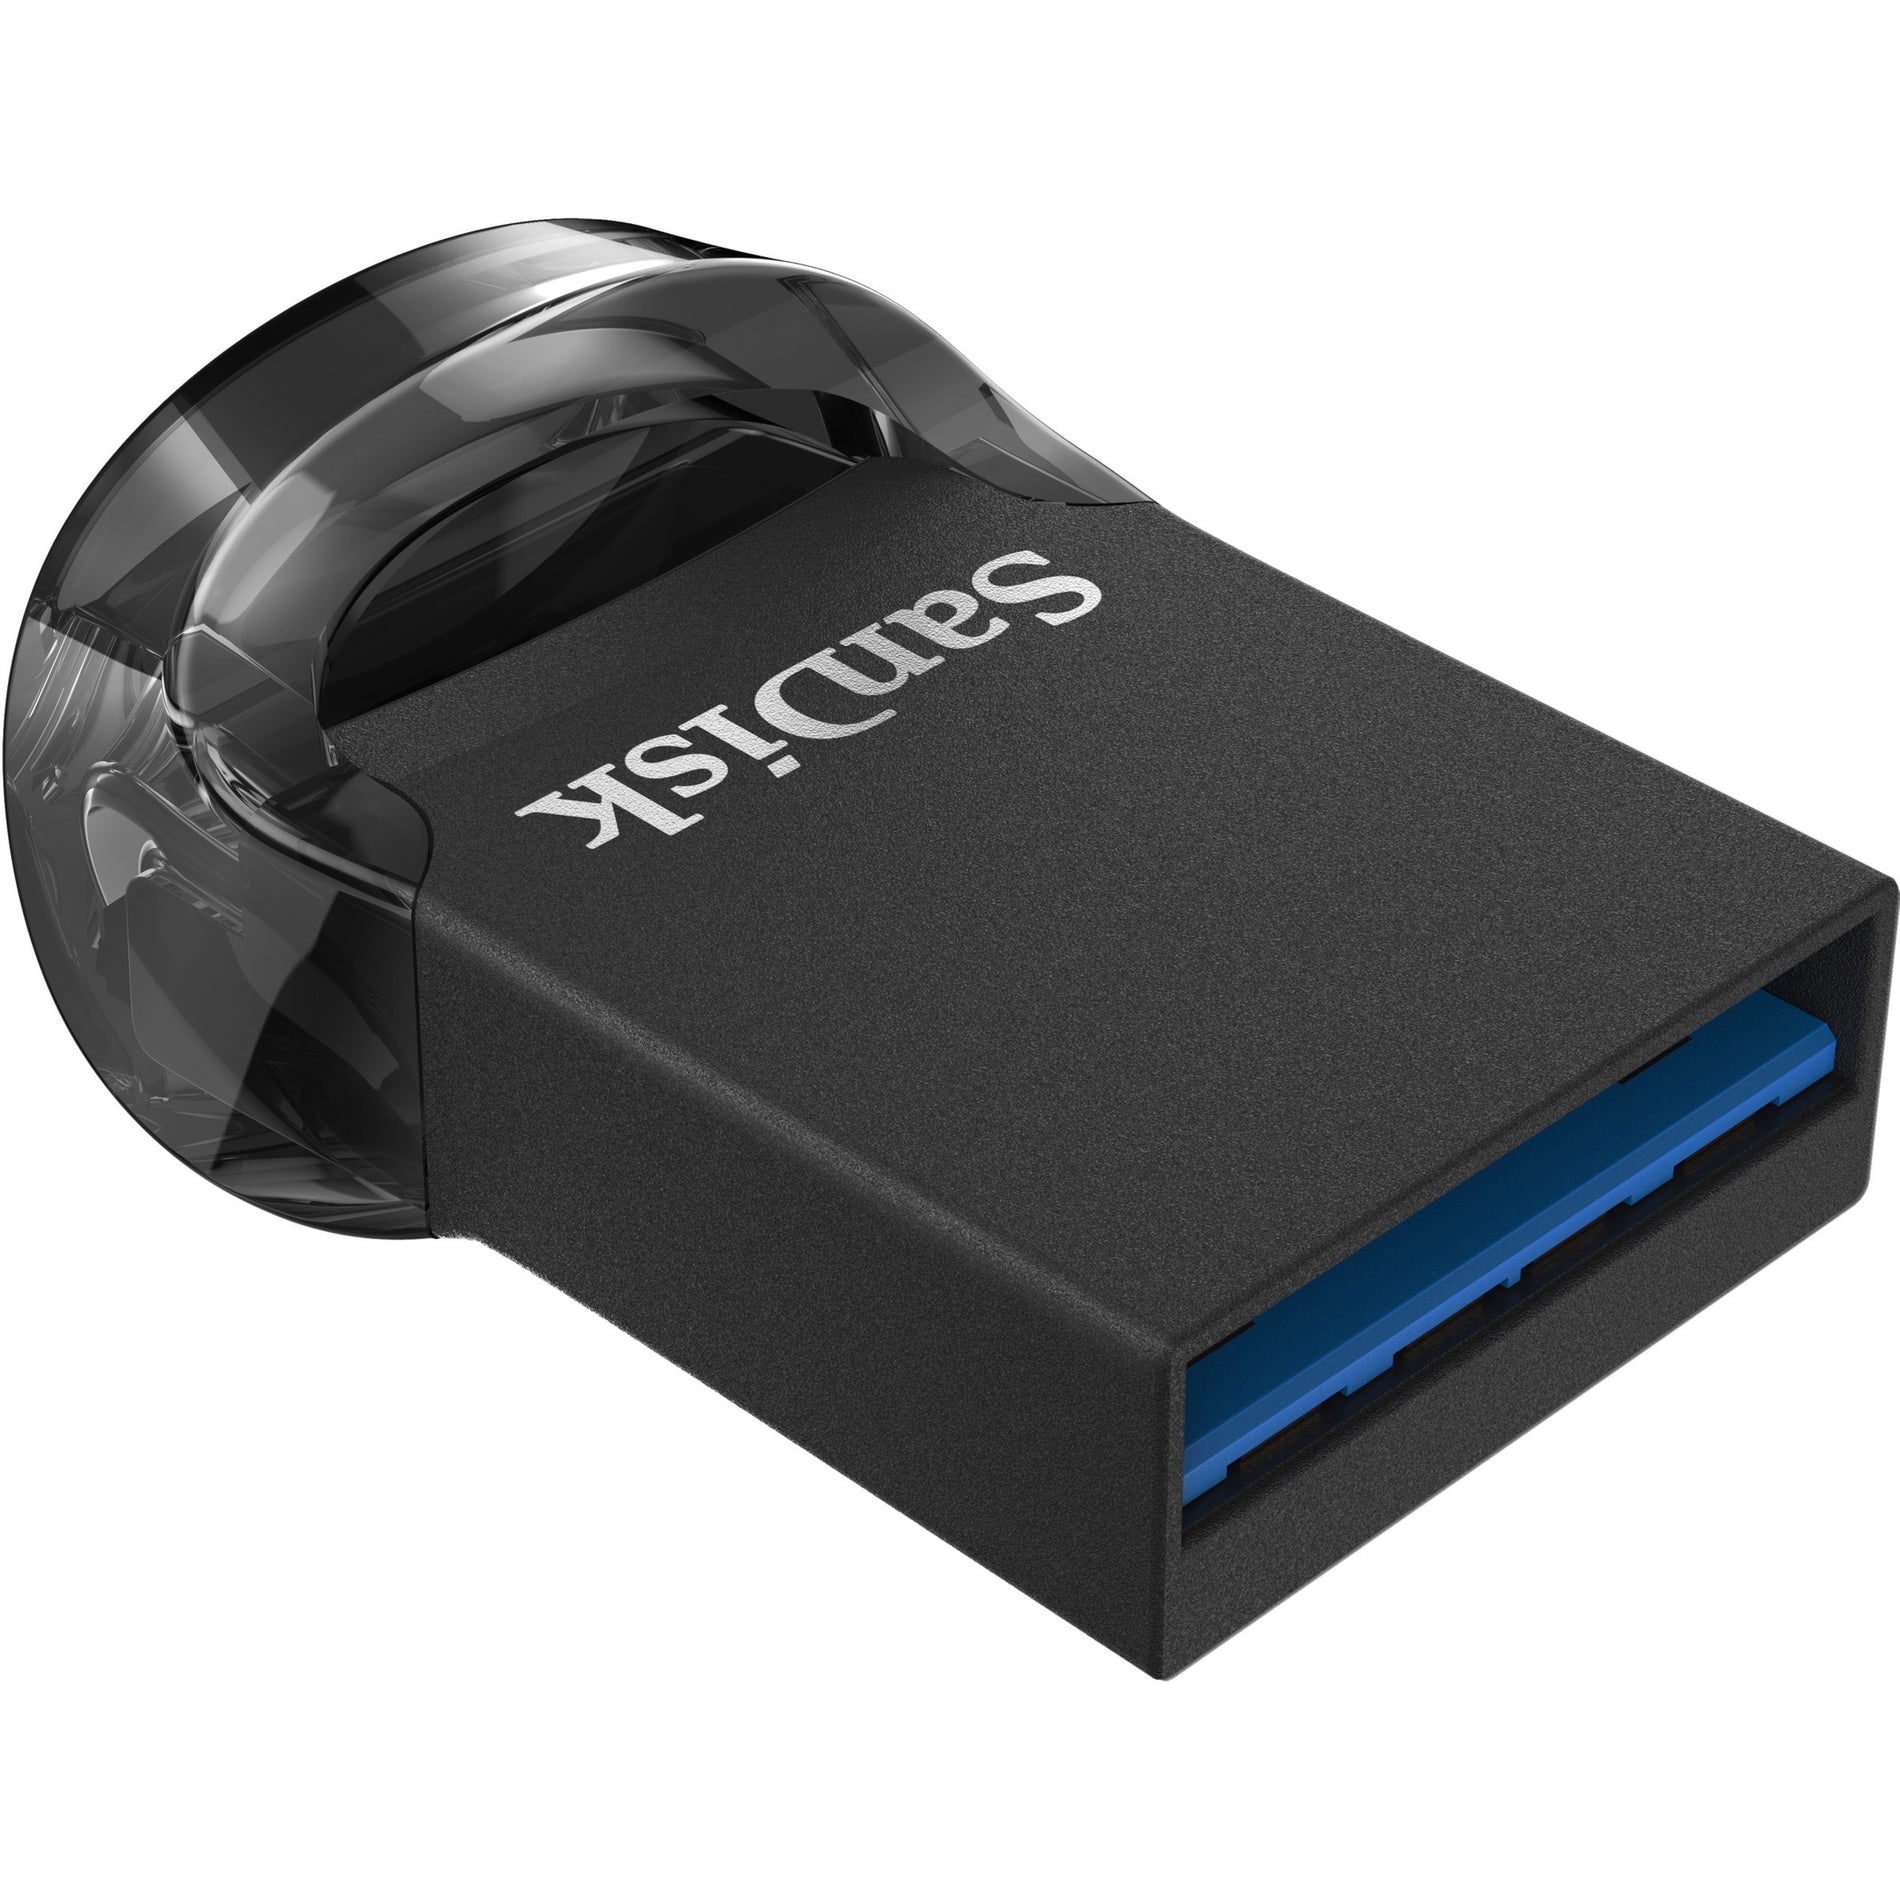 Marca: SanDisk Capacidad: 32GB Interfaz: USB 3.1 Transferencia de Datos de Alta Velocidad Diseño Compacto